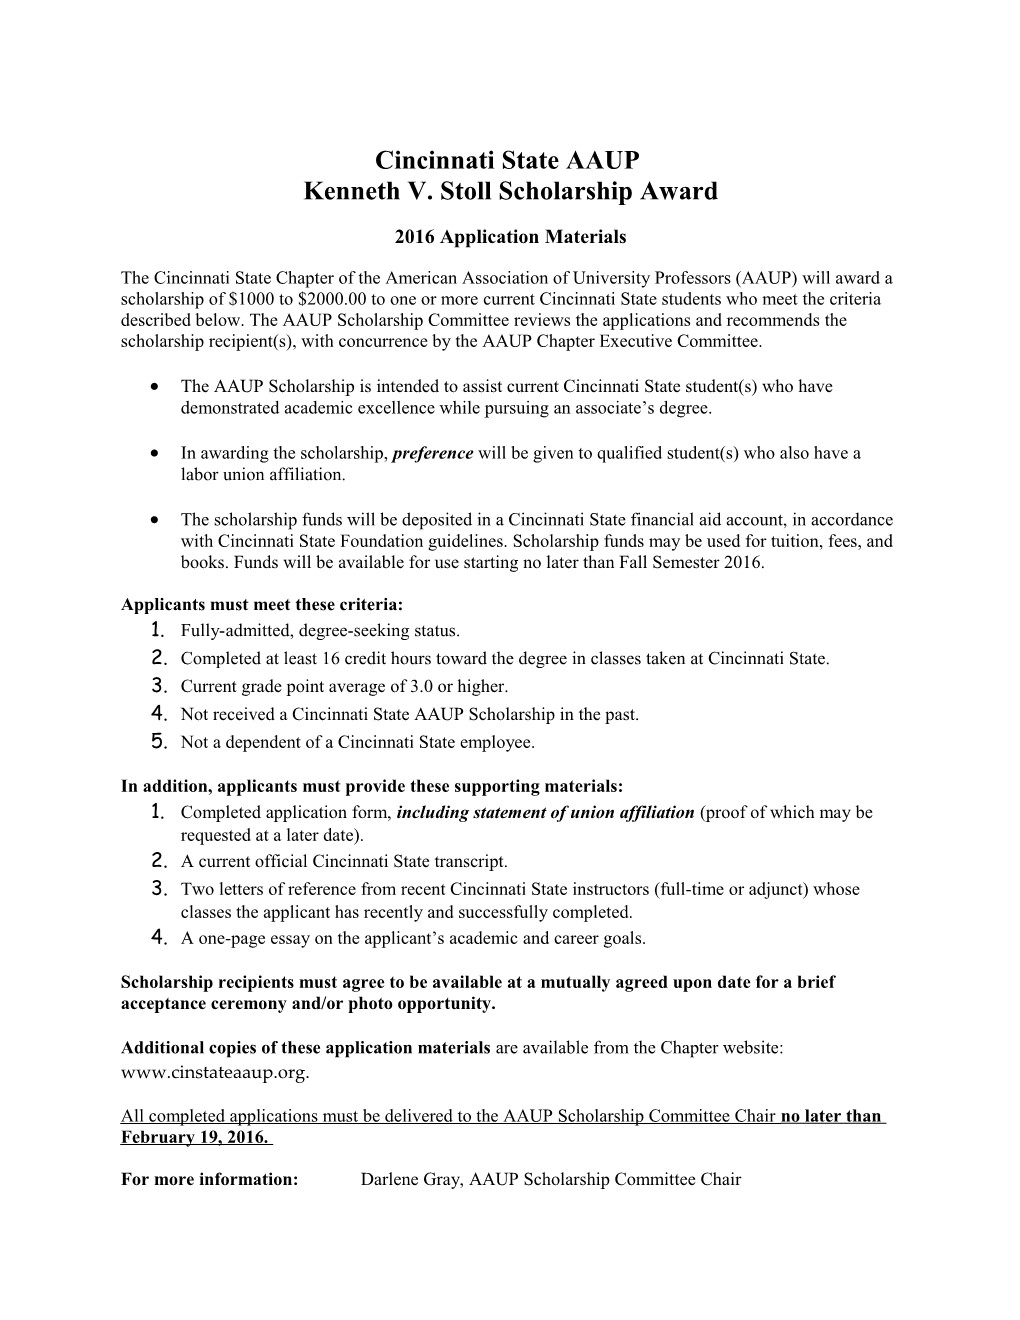 Kenneth V. Stoll Scholarship Award